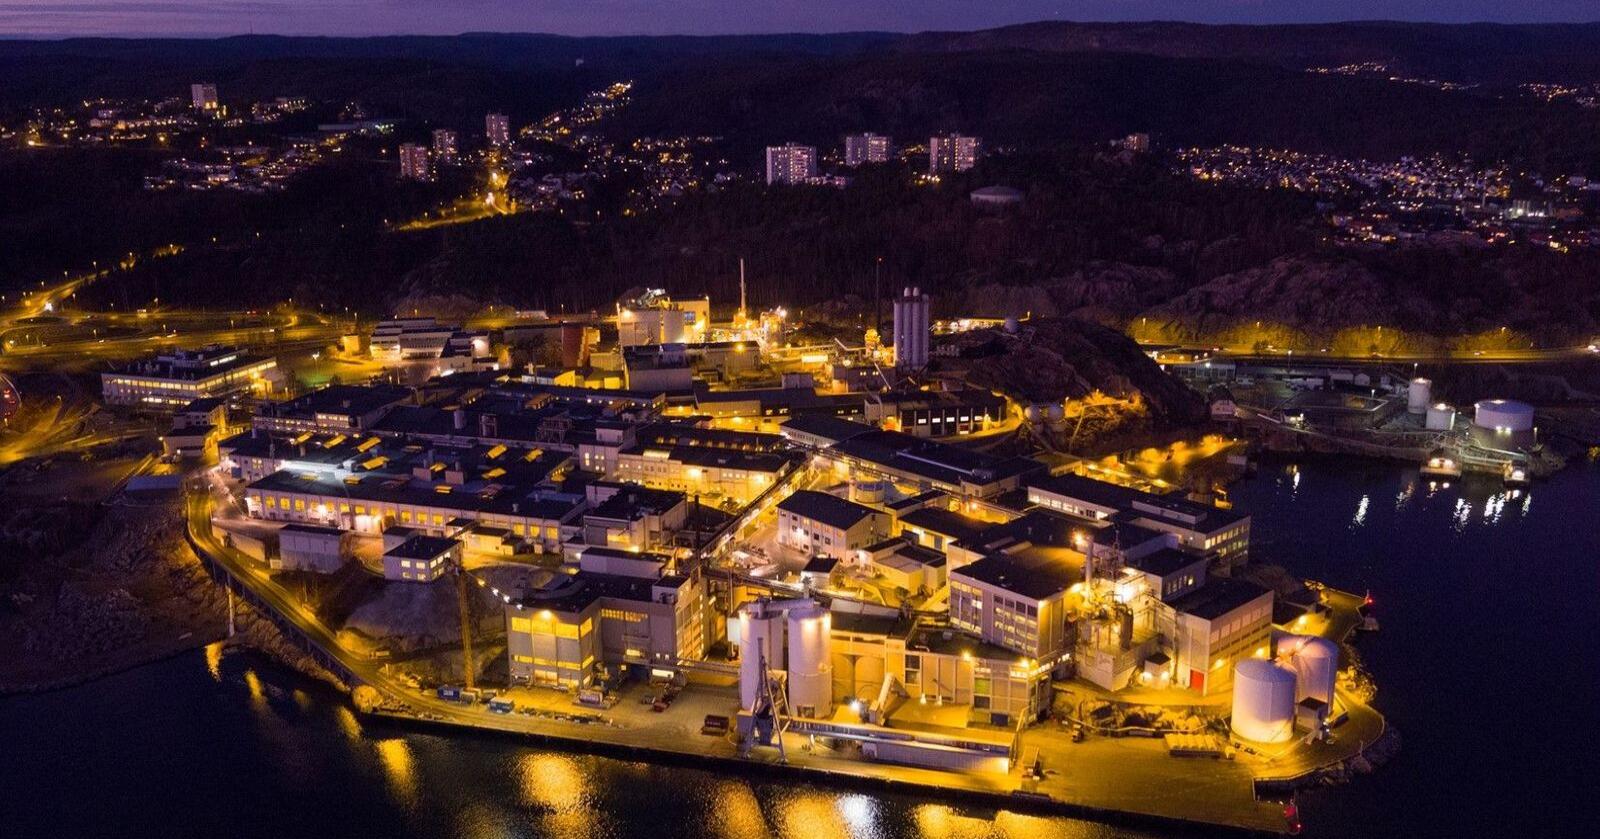 Nikkelverket i Kristiansand er det største nikkelraffineriet i den vestlige verden. Foto: Glencore